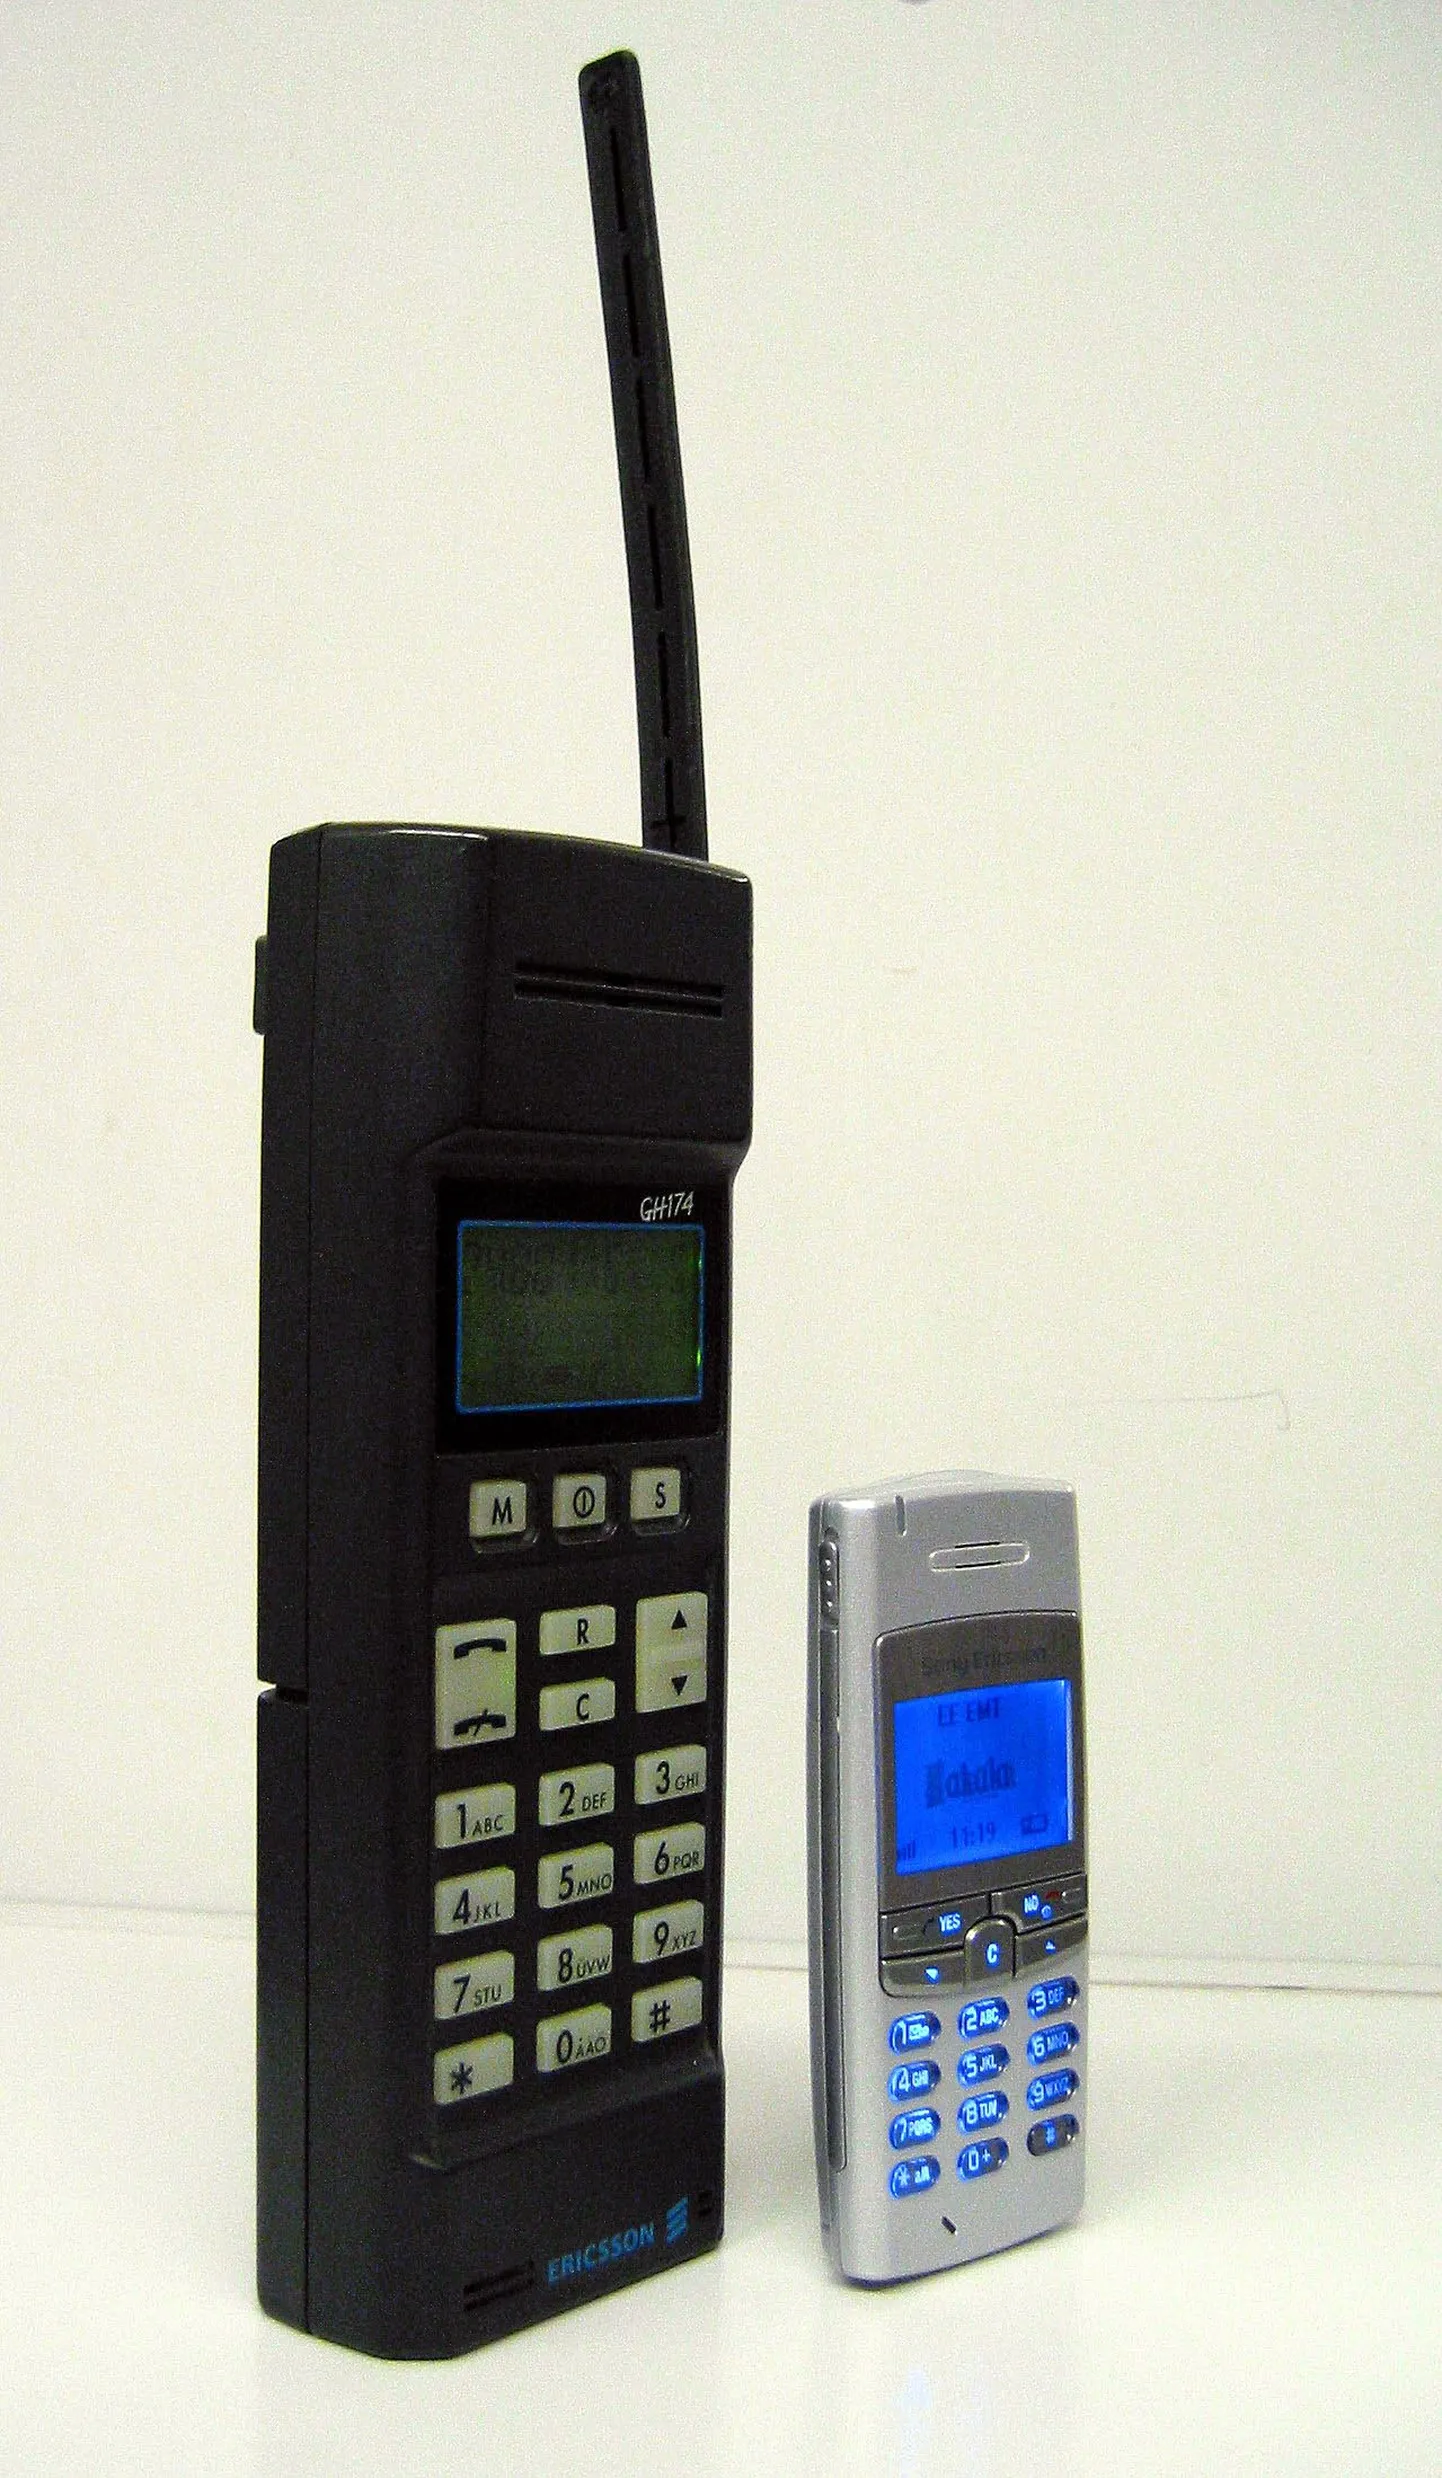 Ericsson GH 174 (suurem) nägi ilmavalgust 1994. aastal ning on seni töökorras ühes uuendatud akuga, kuid pole praegu kasutuses. 2004. aastal toodetud telefoni SonyEricsson T105 saatus on teadmata.